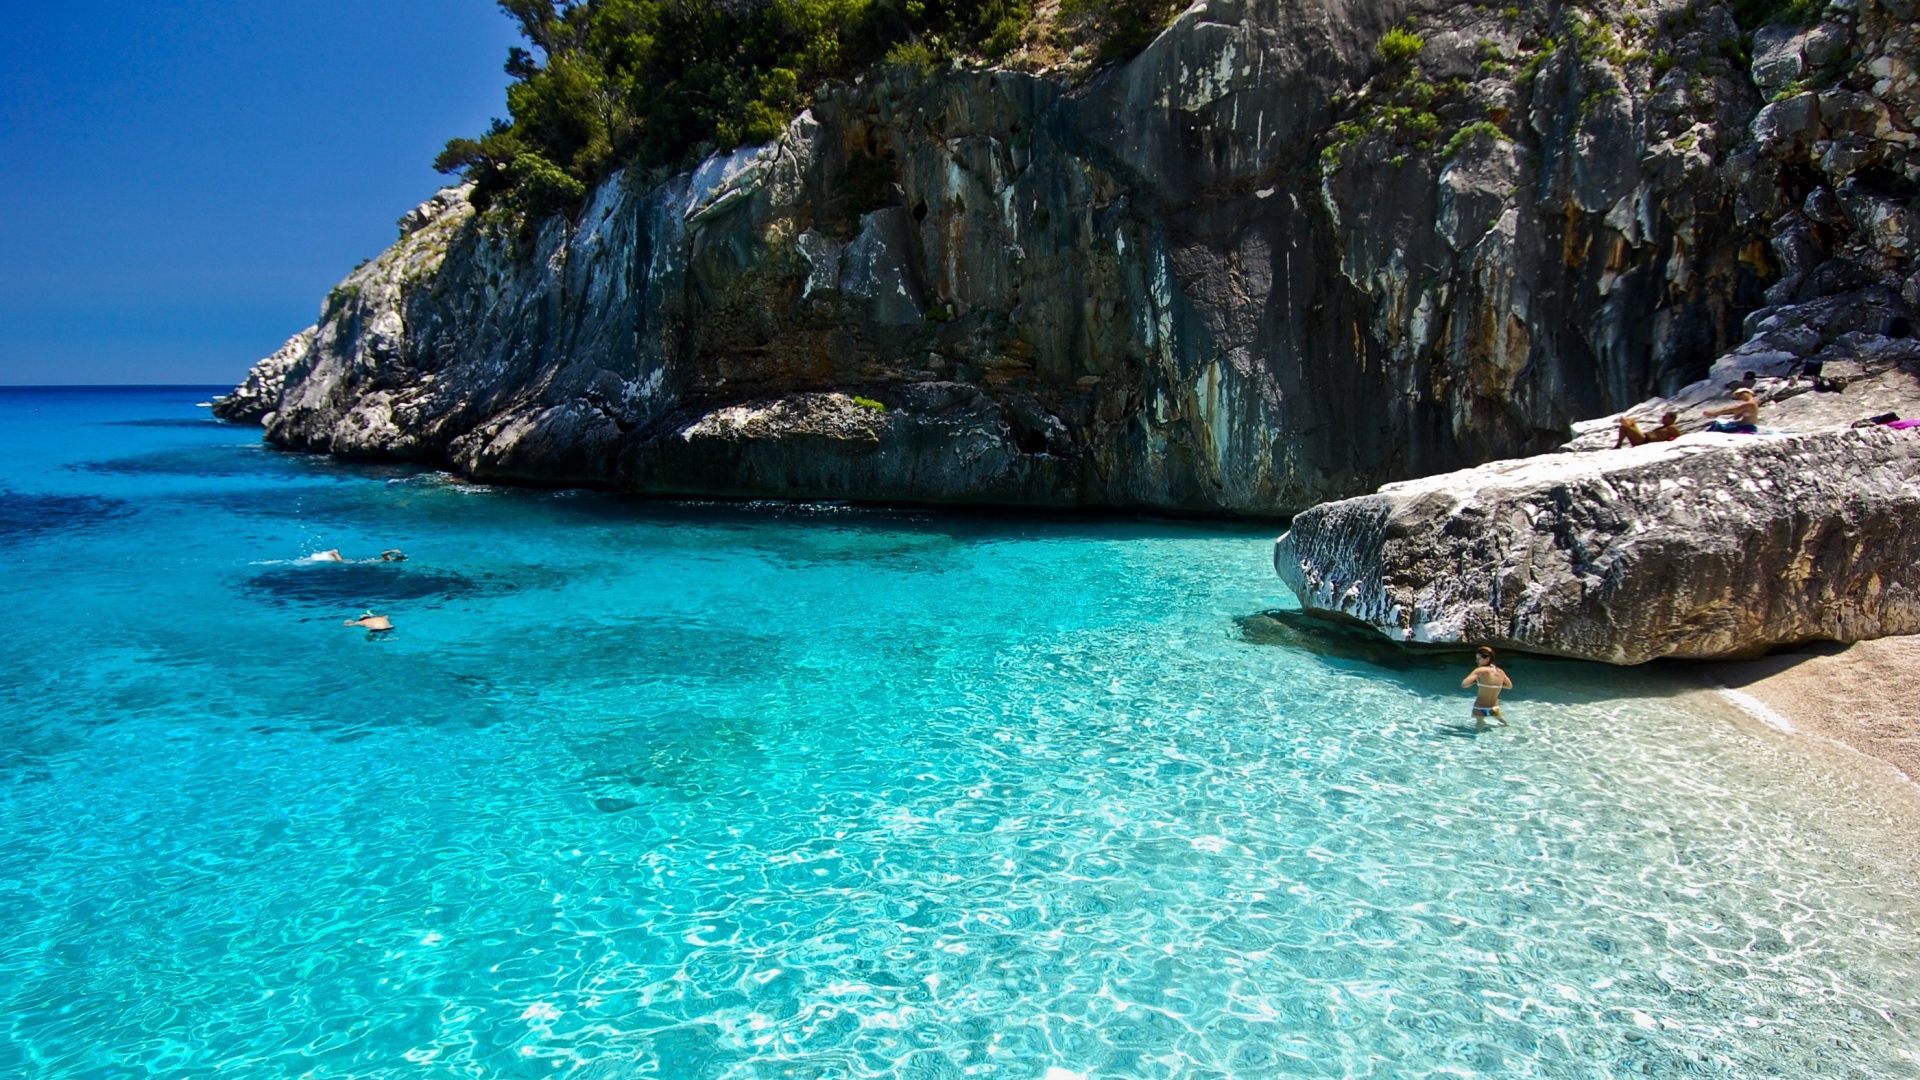 Rock on the beach on the island of Sardinia, Italy